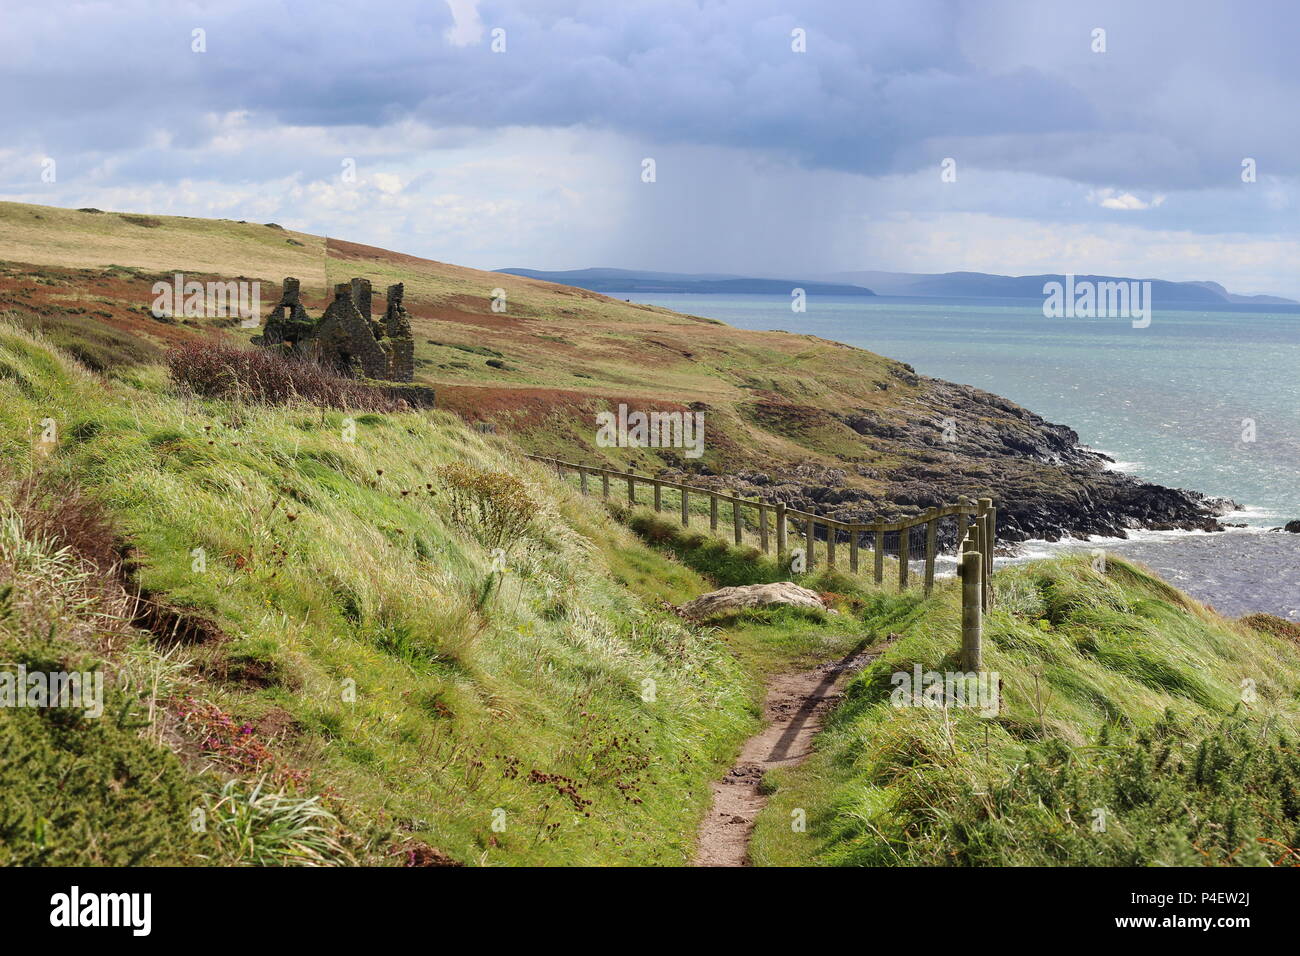 Il Clifftop view per cui il Dunskey Castle.Le rovine di questa 16C tower si affacciano sul mare irlandese.dalla Scozia la linea costiera di.. Foto Stock